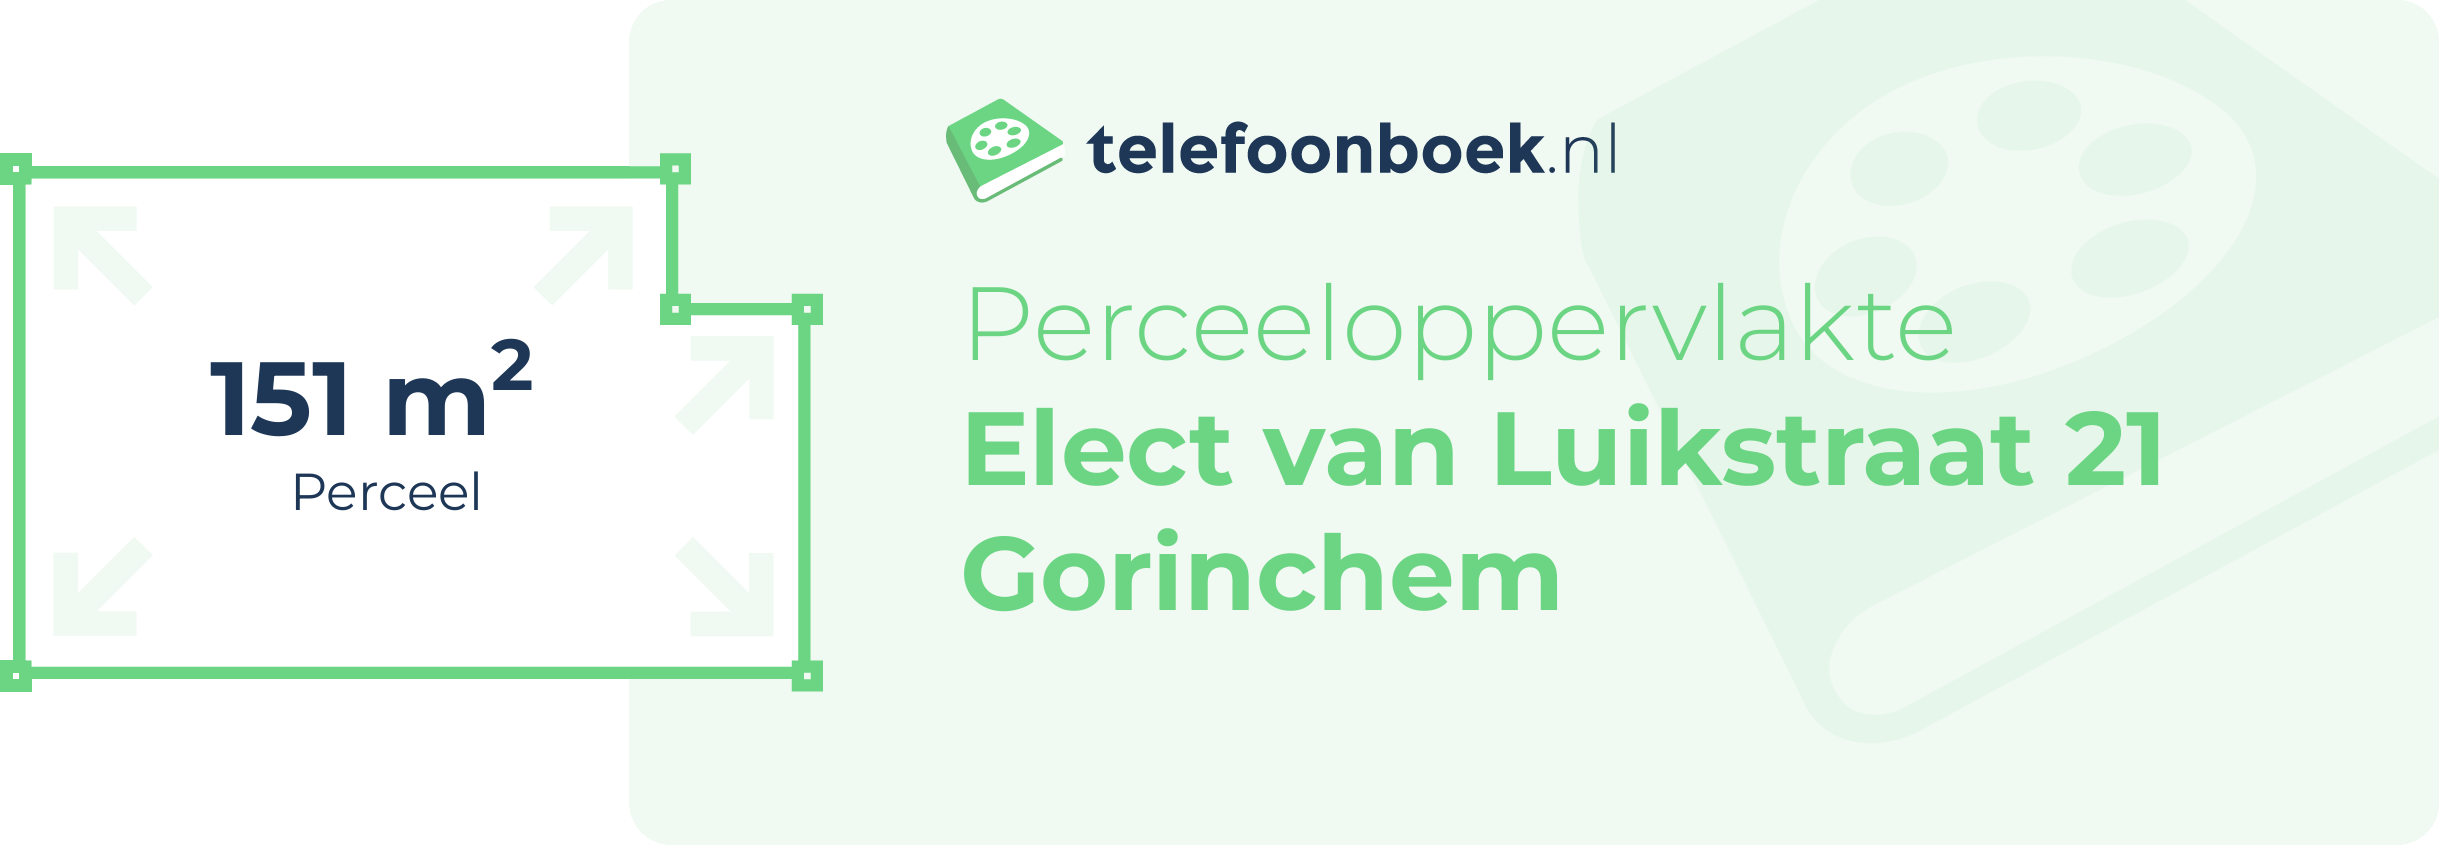 Perceeloppervlakte Elect Van Luikstraat 21 Gorinchem